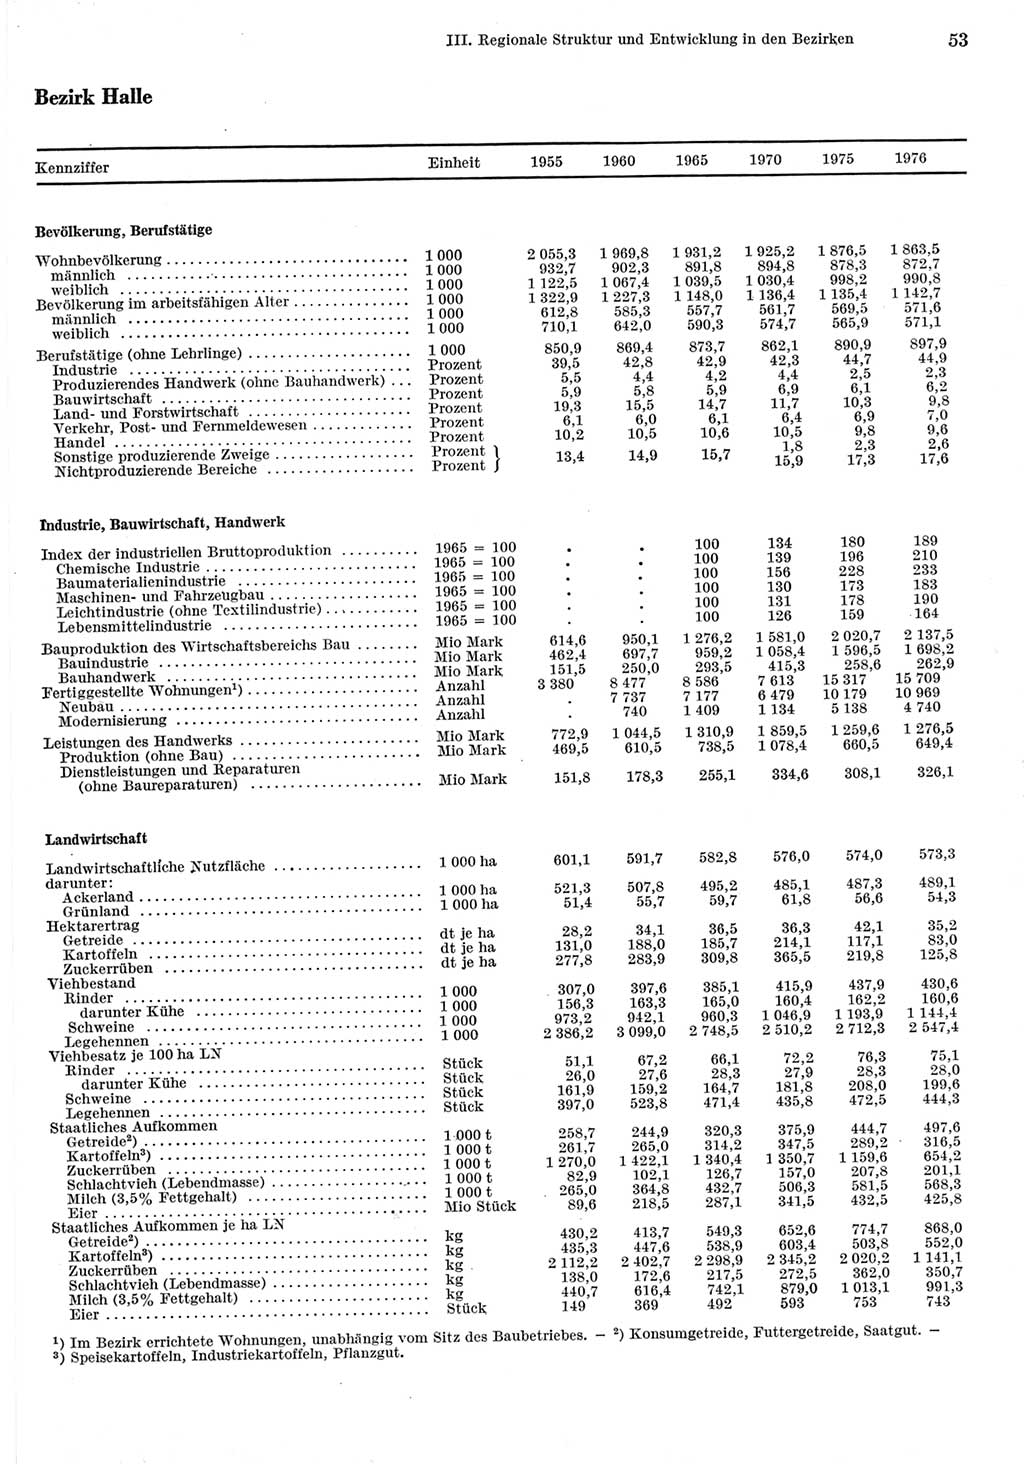 Statistisches Jahrbuch der Deutschen Demokratischen Republik (DDR) 1977, Seite 53 (Stat. Jb. DDR 1977, S. 53)